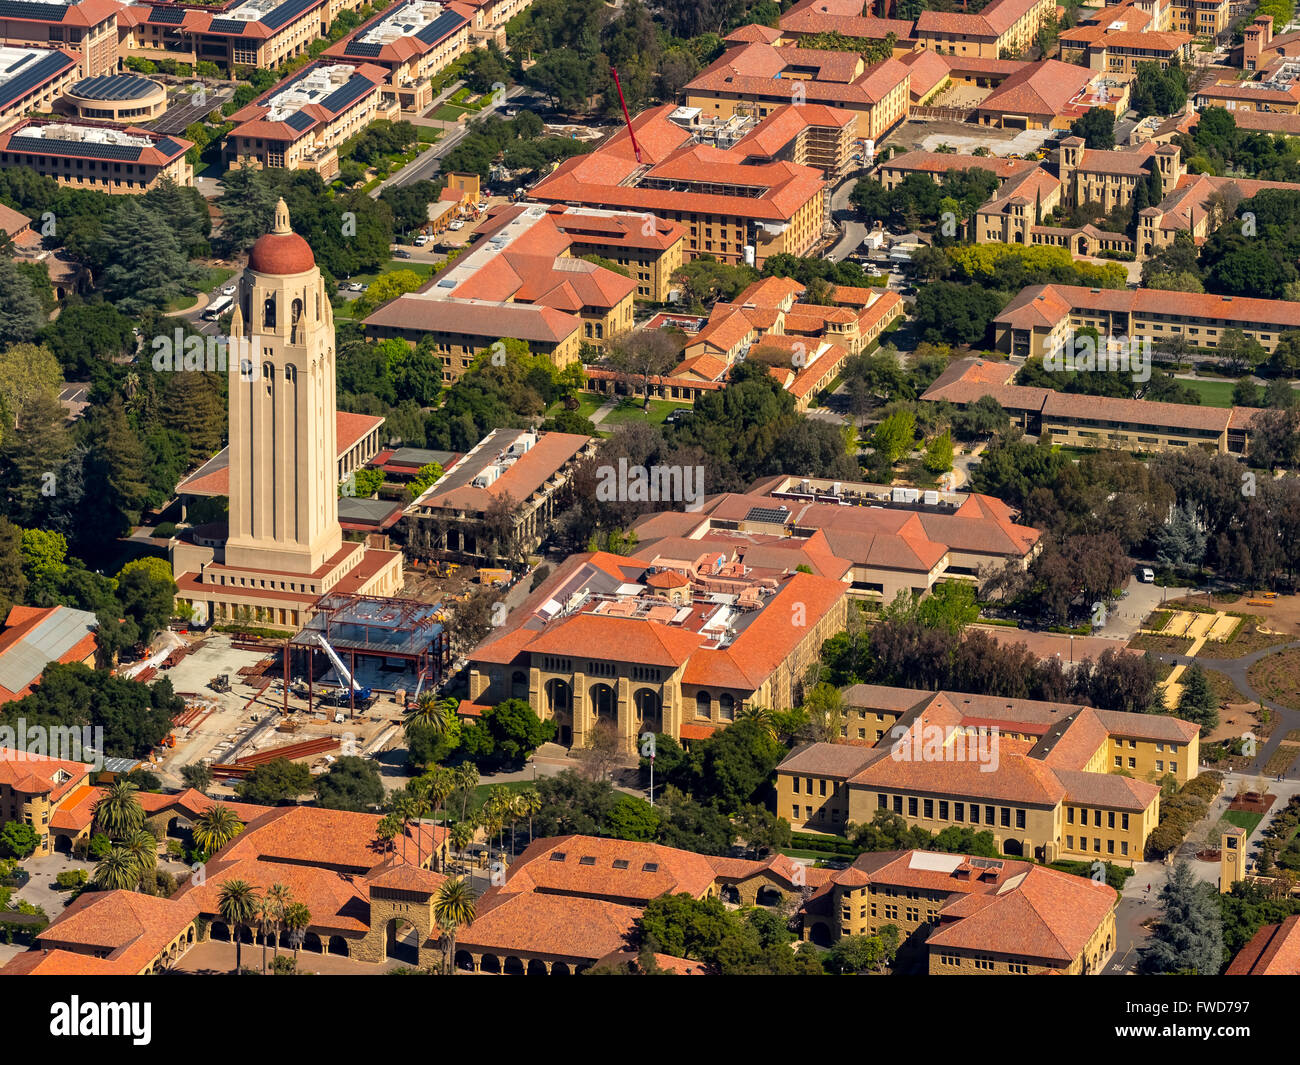 Stanford, Palo Alto, USA